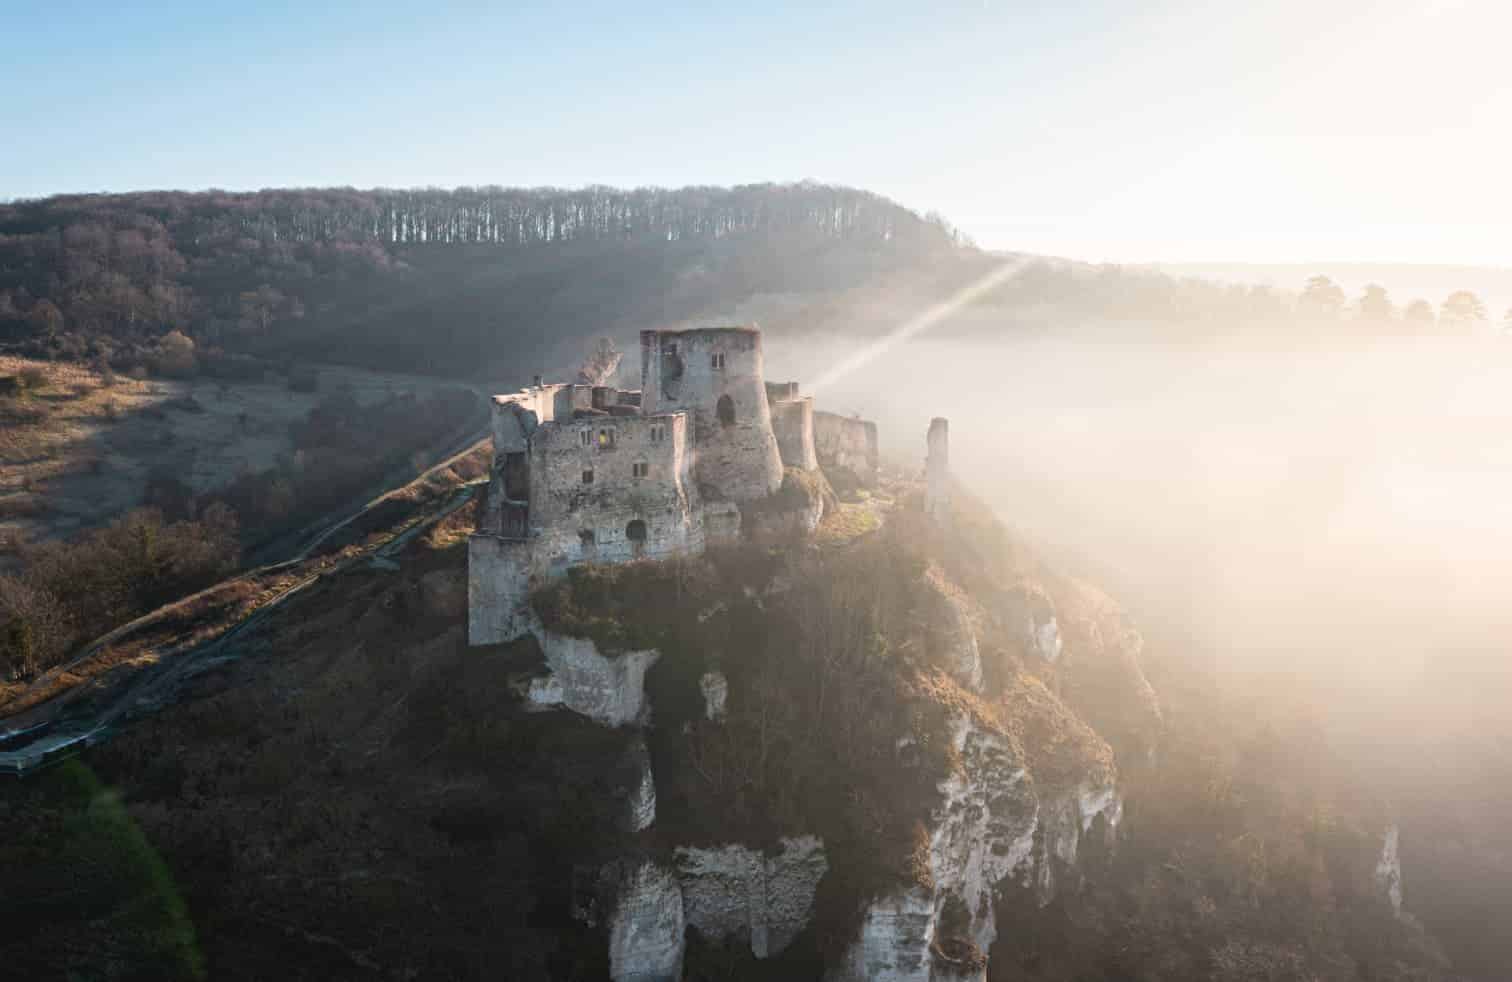 Ancien château perché sur une falaise surplombant une vallée couverte de brume au lever du soleil.